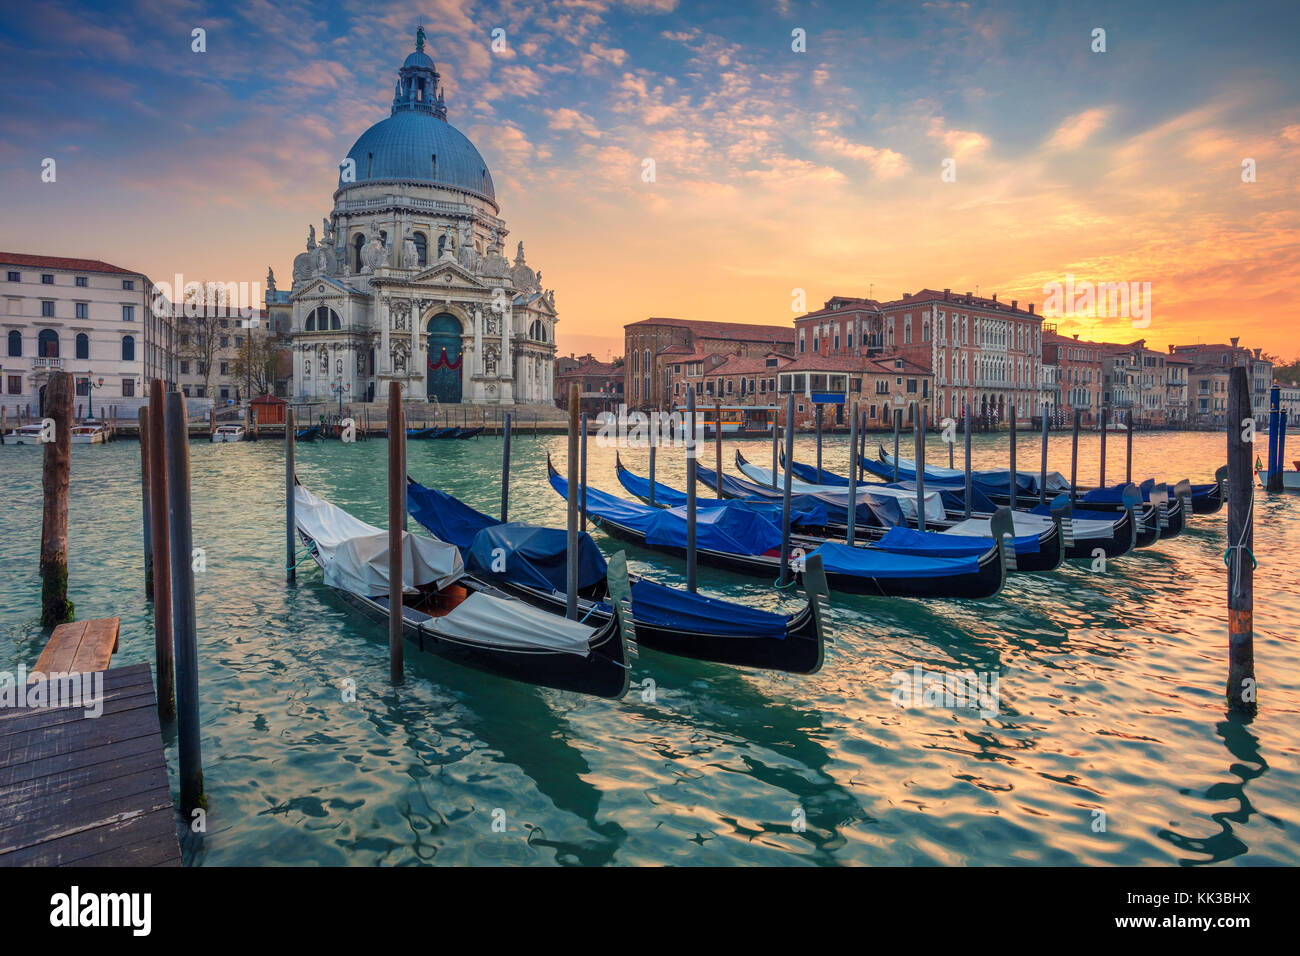 Venice. Cityscape image of Grand Canal in Venice, with Santa Maria della Salute Basilica in the background. Stock Photo